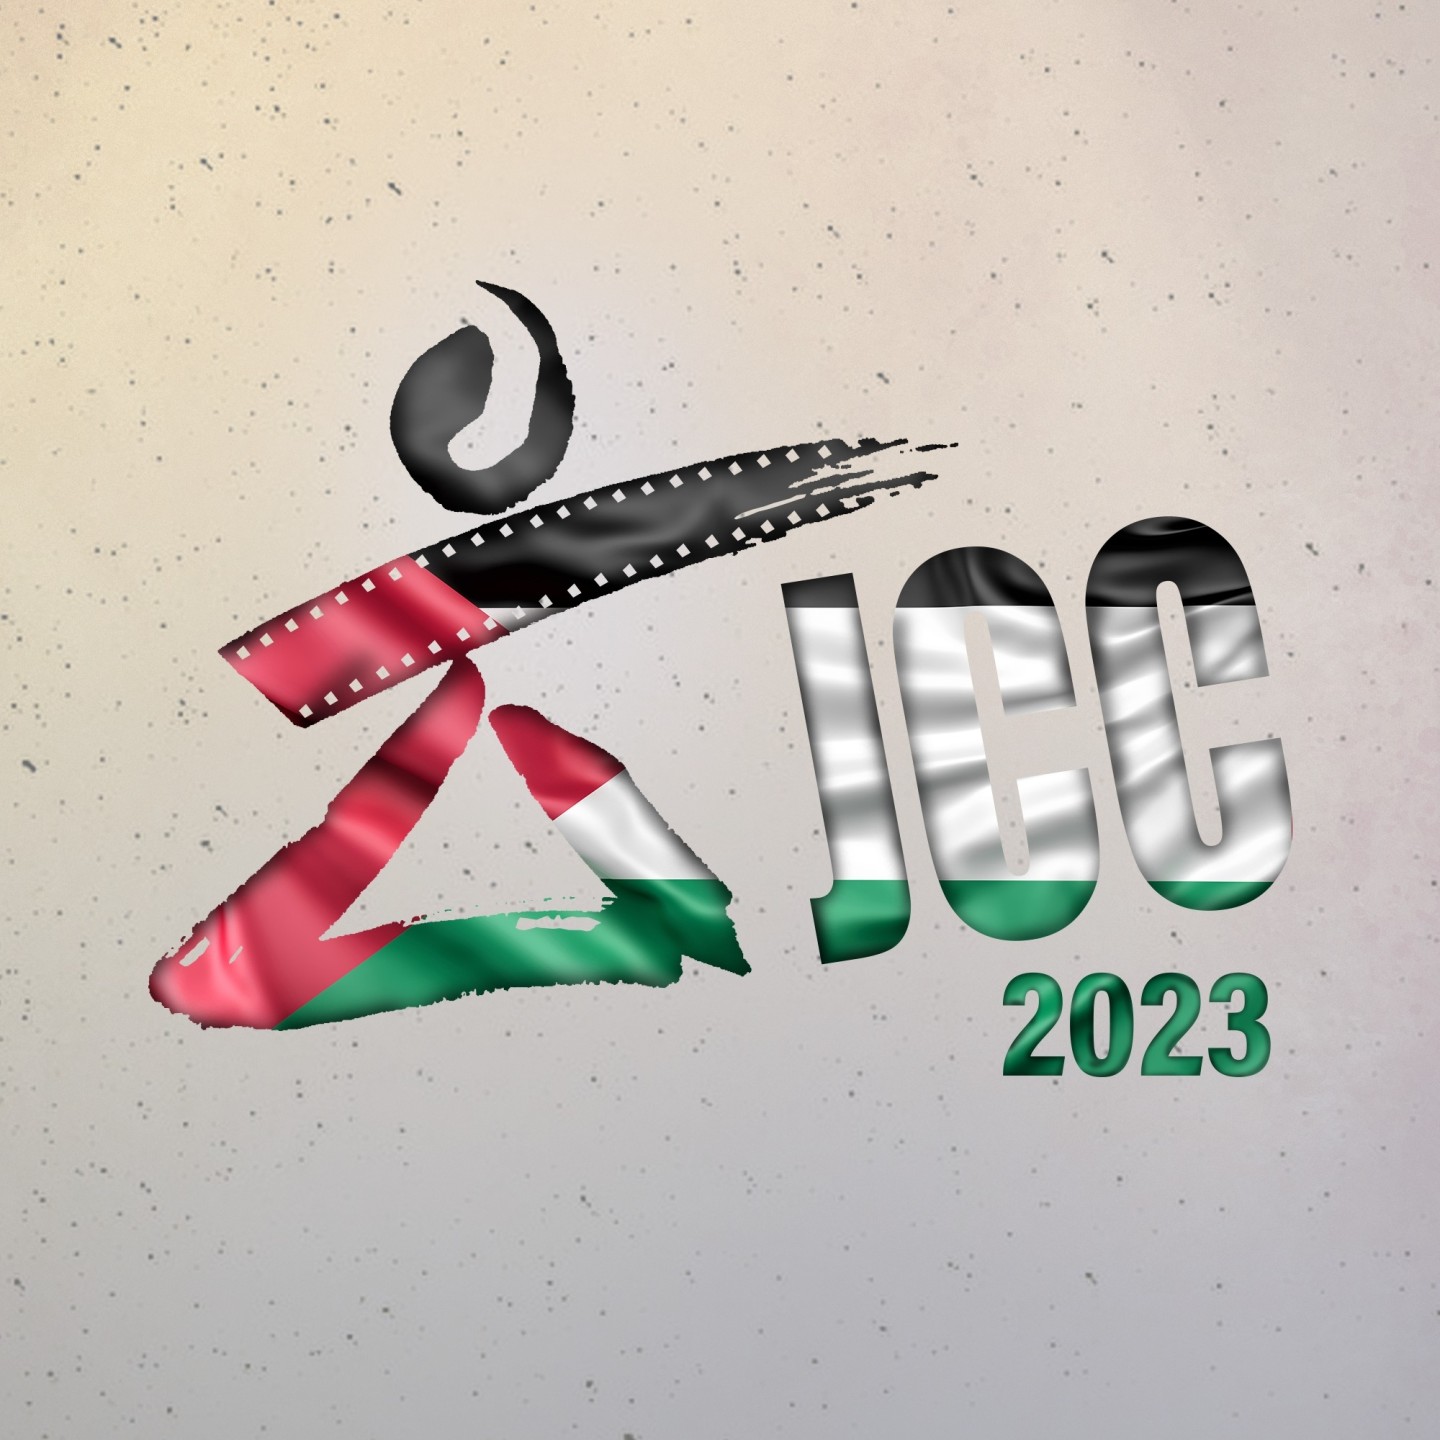 إلغاء الاحتفالات في مهرجان أيام قرطاج السينمائية